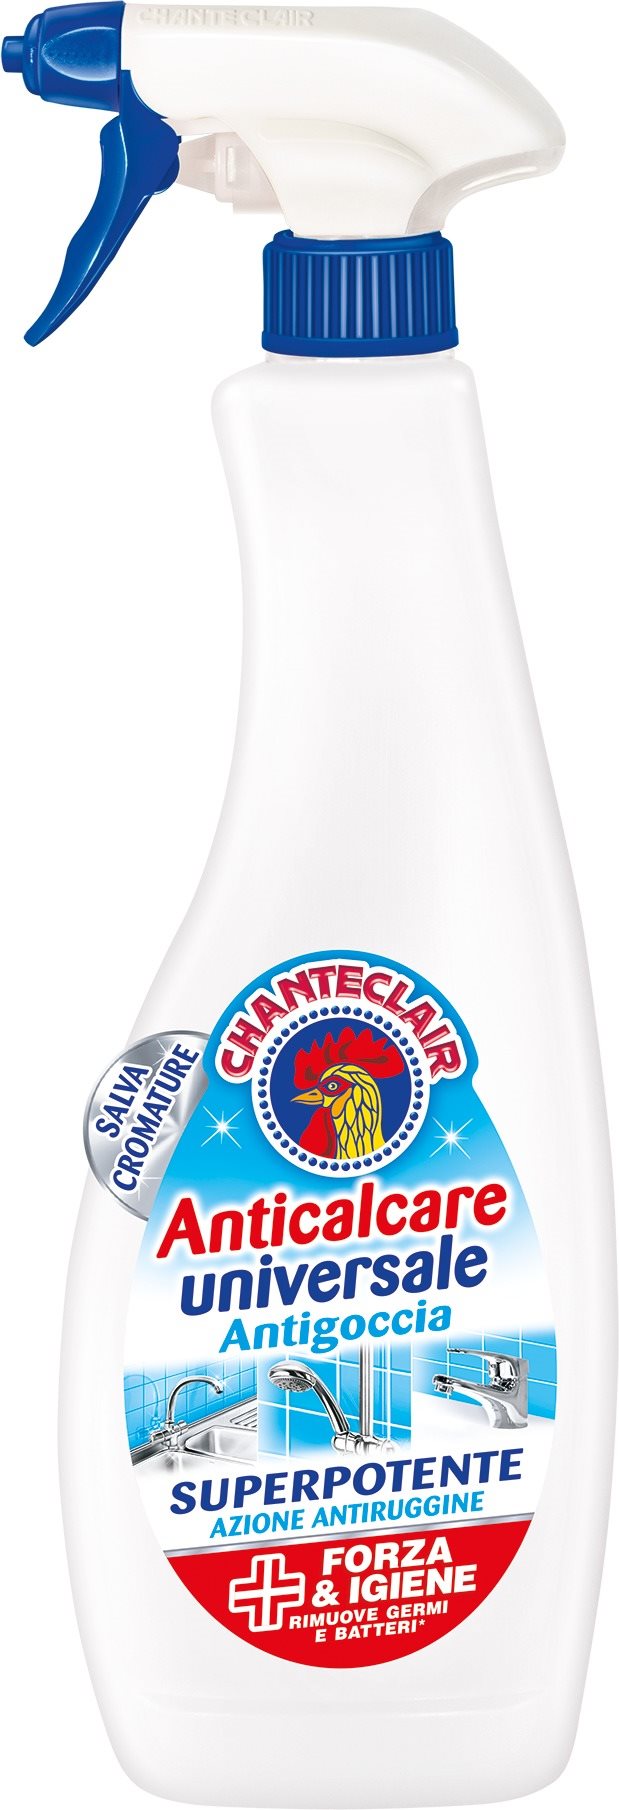 Tisztítószer CHANTE CLAIR Anticalcare Antigoccia Rozsda- és vízkőoldó tisztító 625 ml